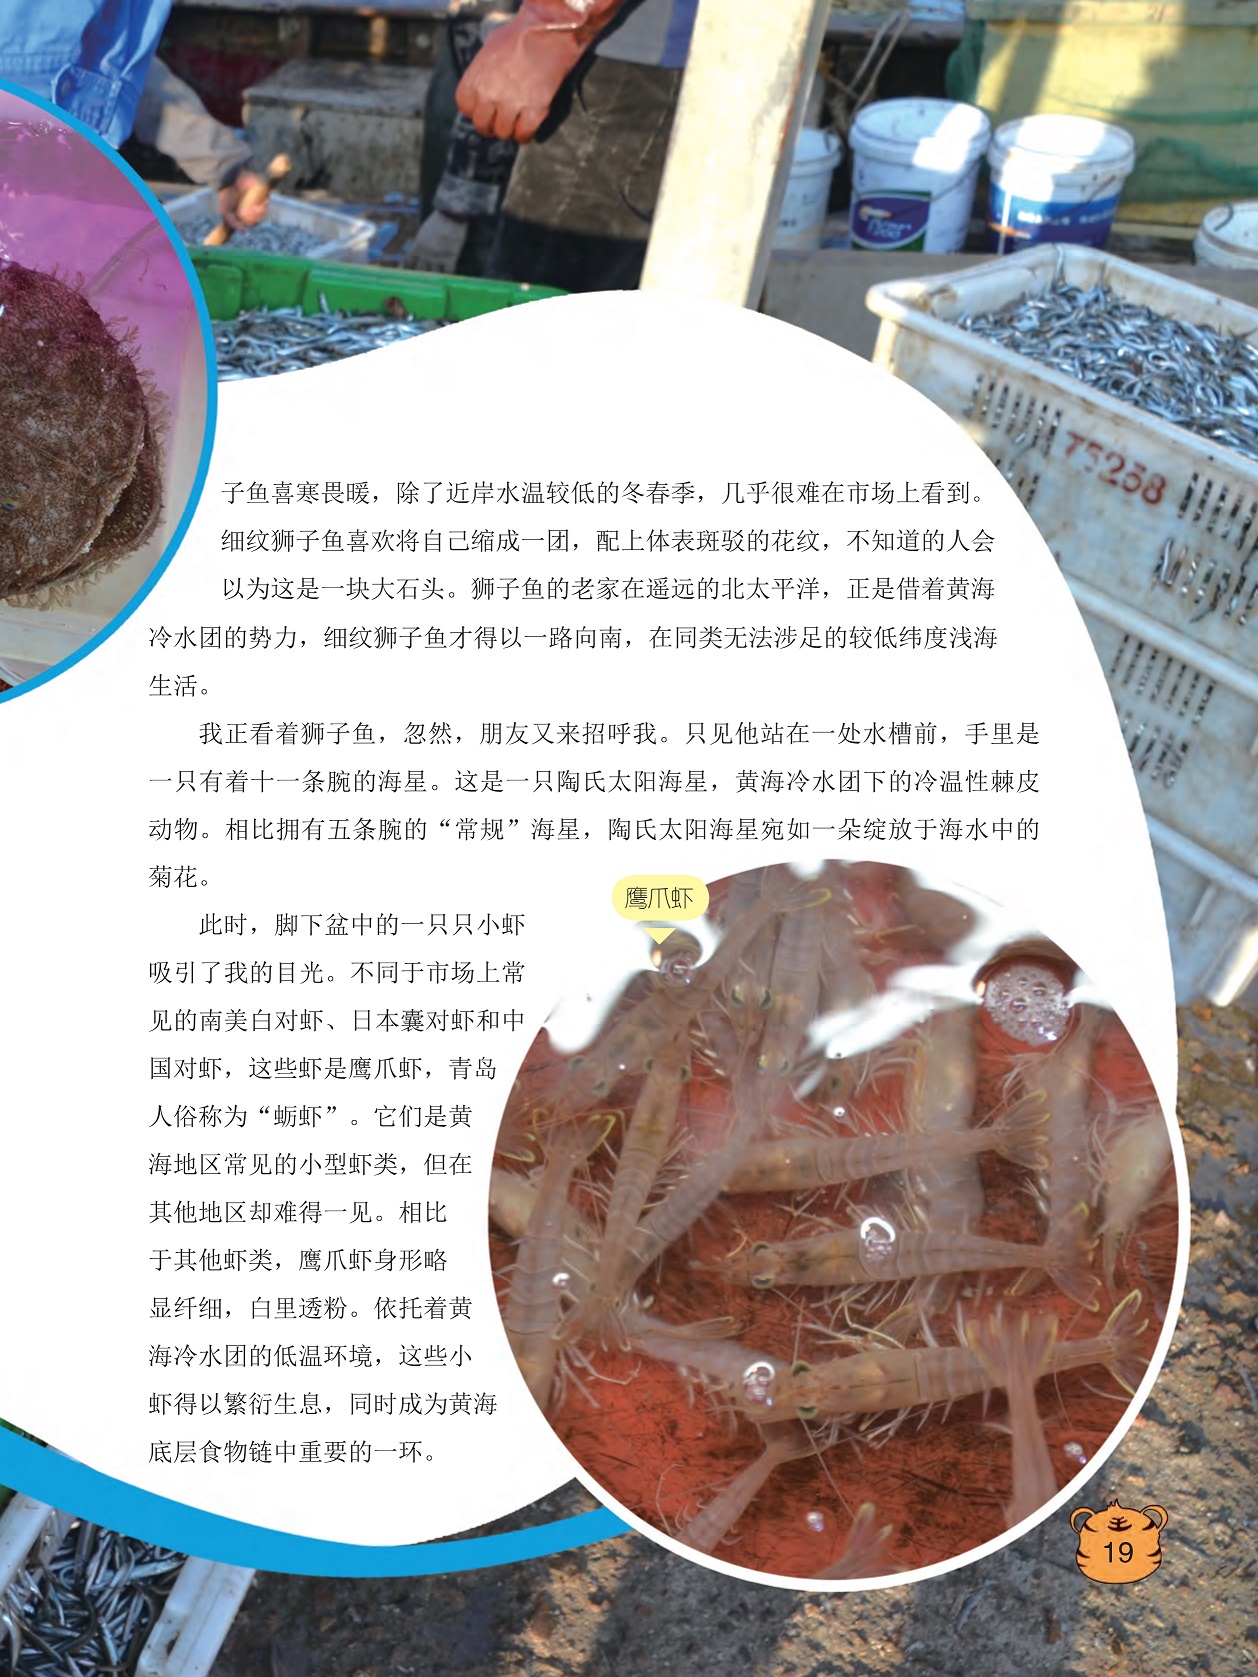 陶氏太阳海星宛如一朵绽放于海水中的菊花,鹰爪虾是黄海地区常见的小型虾类